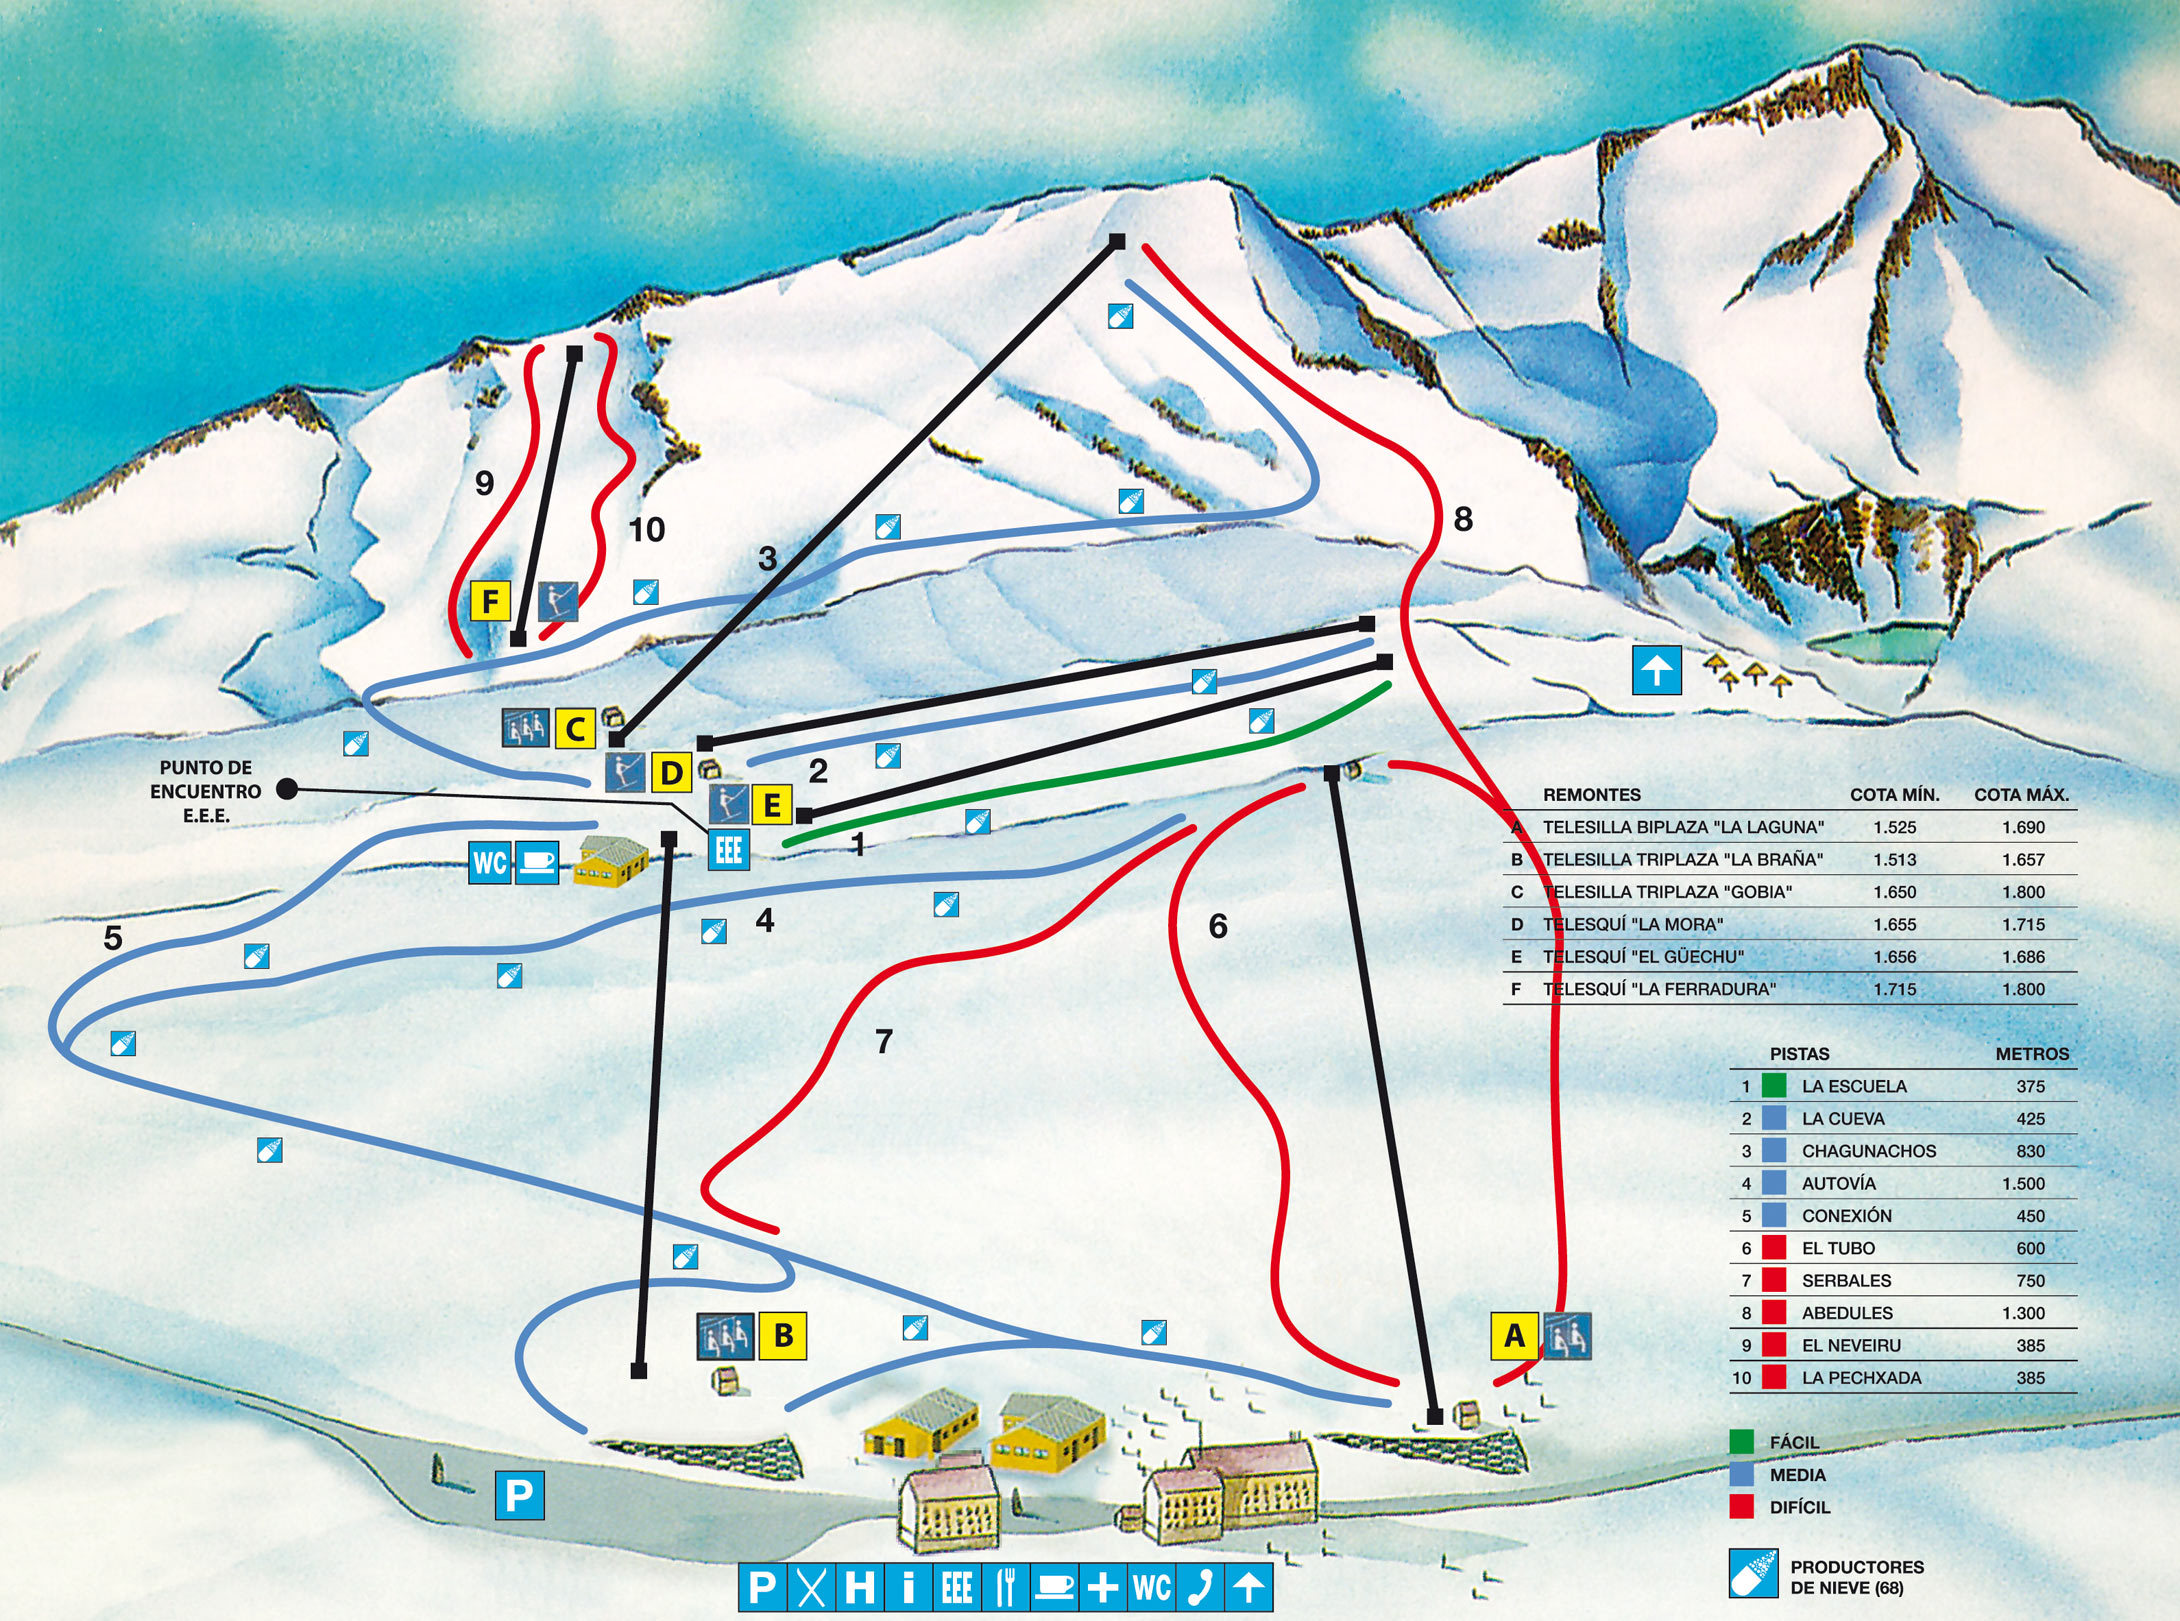 Plan Pistes Ski Leitariegos en Images